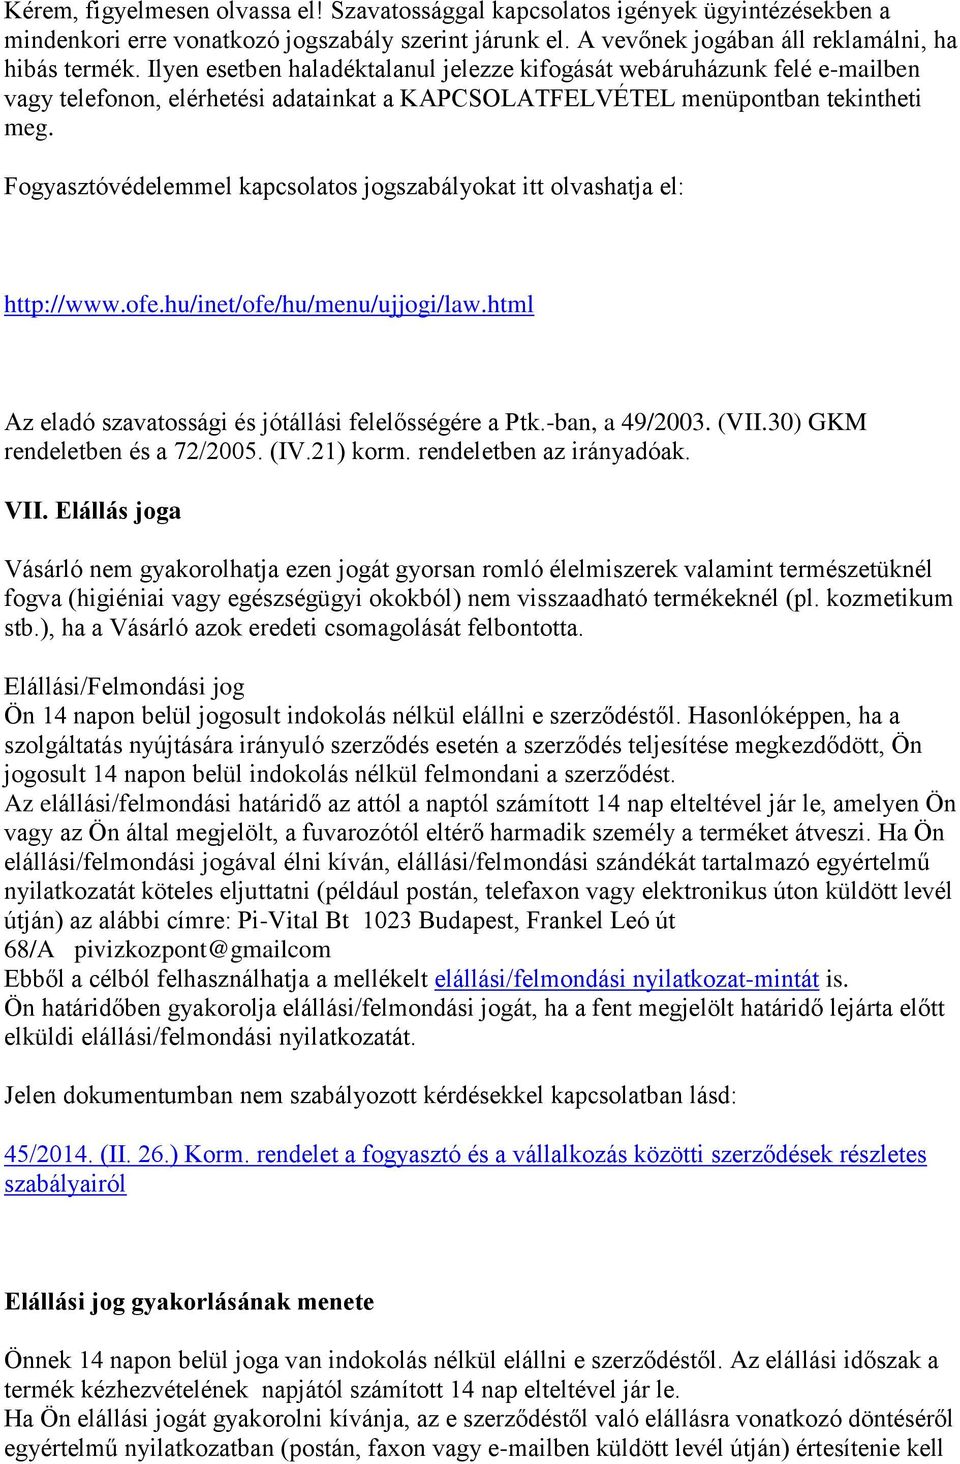 Fogyasztóvédelemmel kapcsolatos jogszabályokat itt olvashatja el: http://www.ofe.hu/inet/ofe/hu/menu/ujjogi/law.html Az eladó szavatossági és jótállási felelősségére a Ptk.-ban, a 49/2003. (VII.